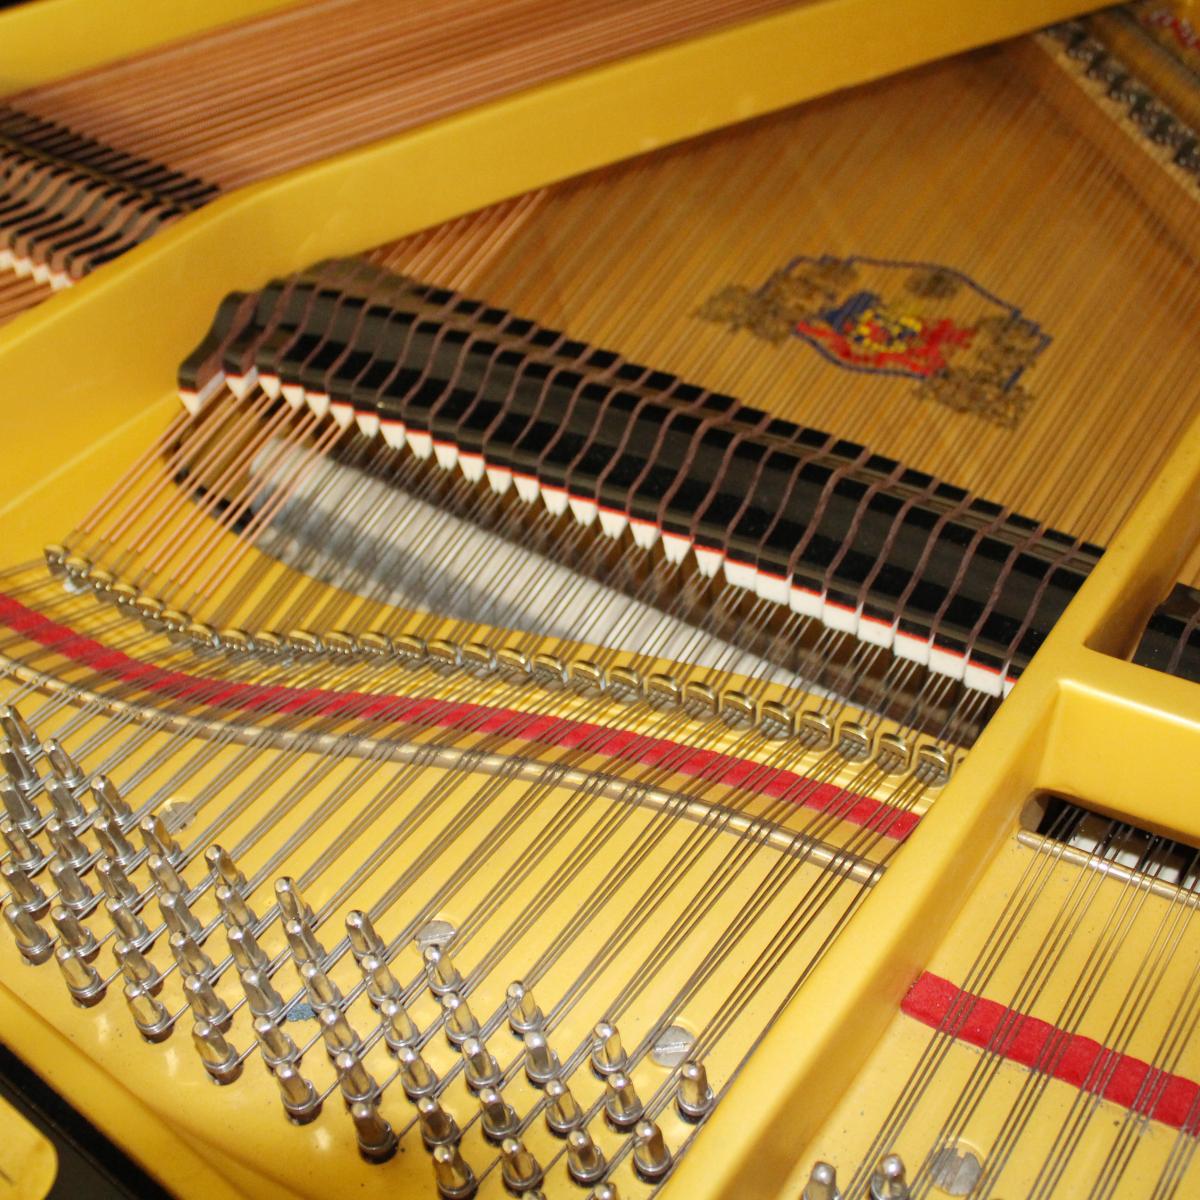 inside Grotrian-Steinweg 5' 4" grand piano